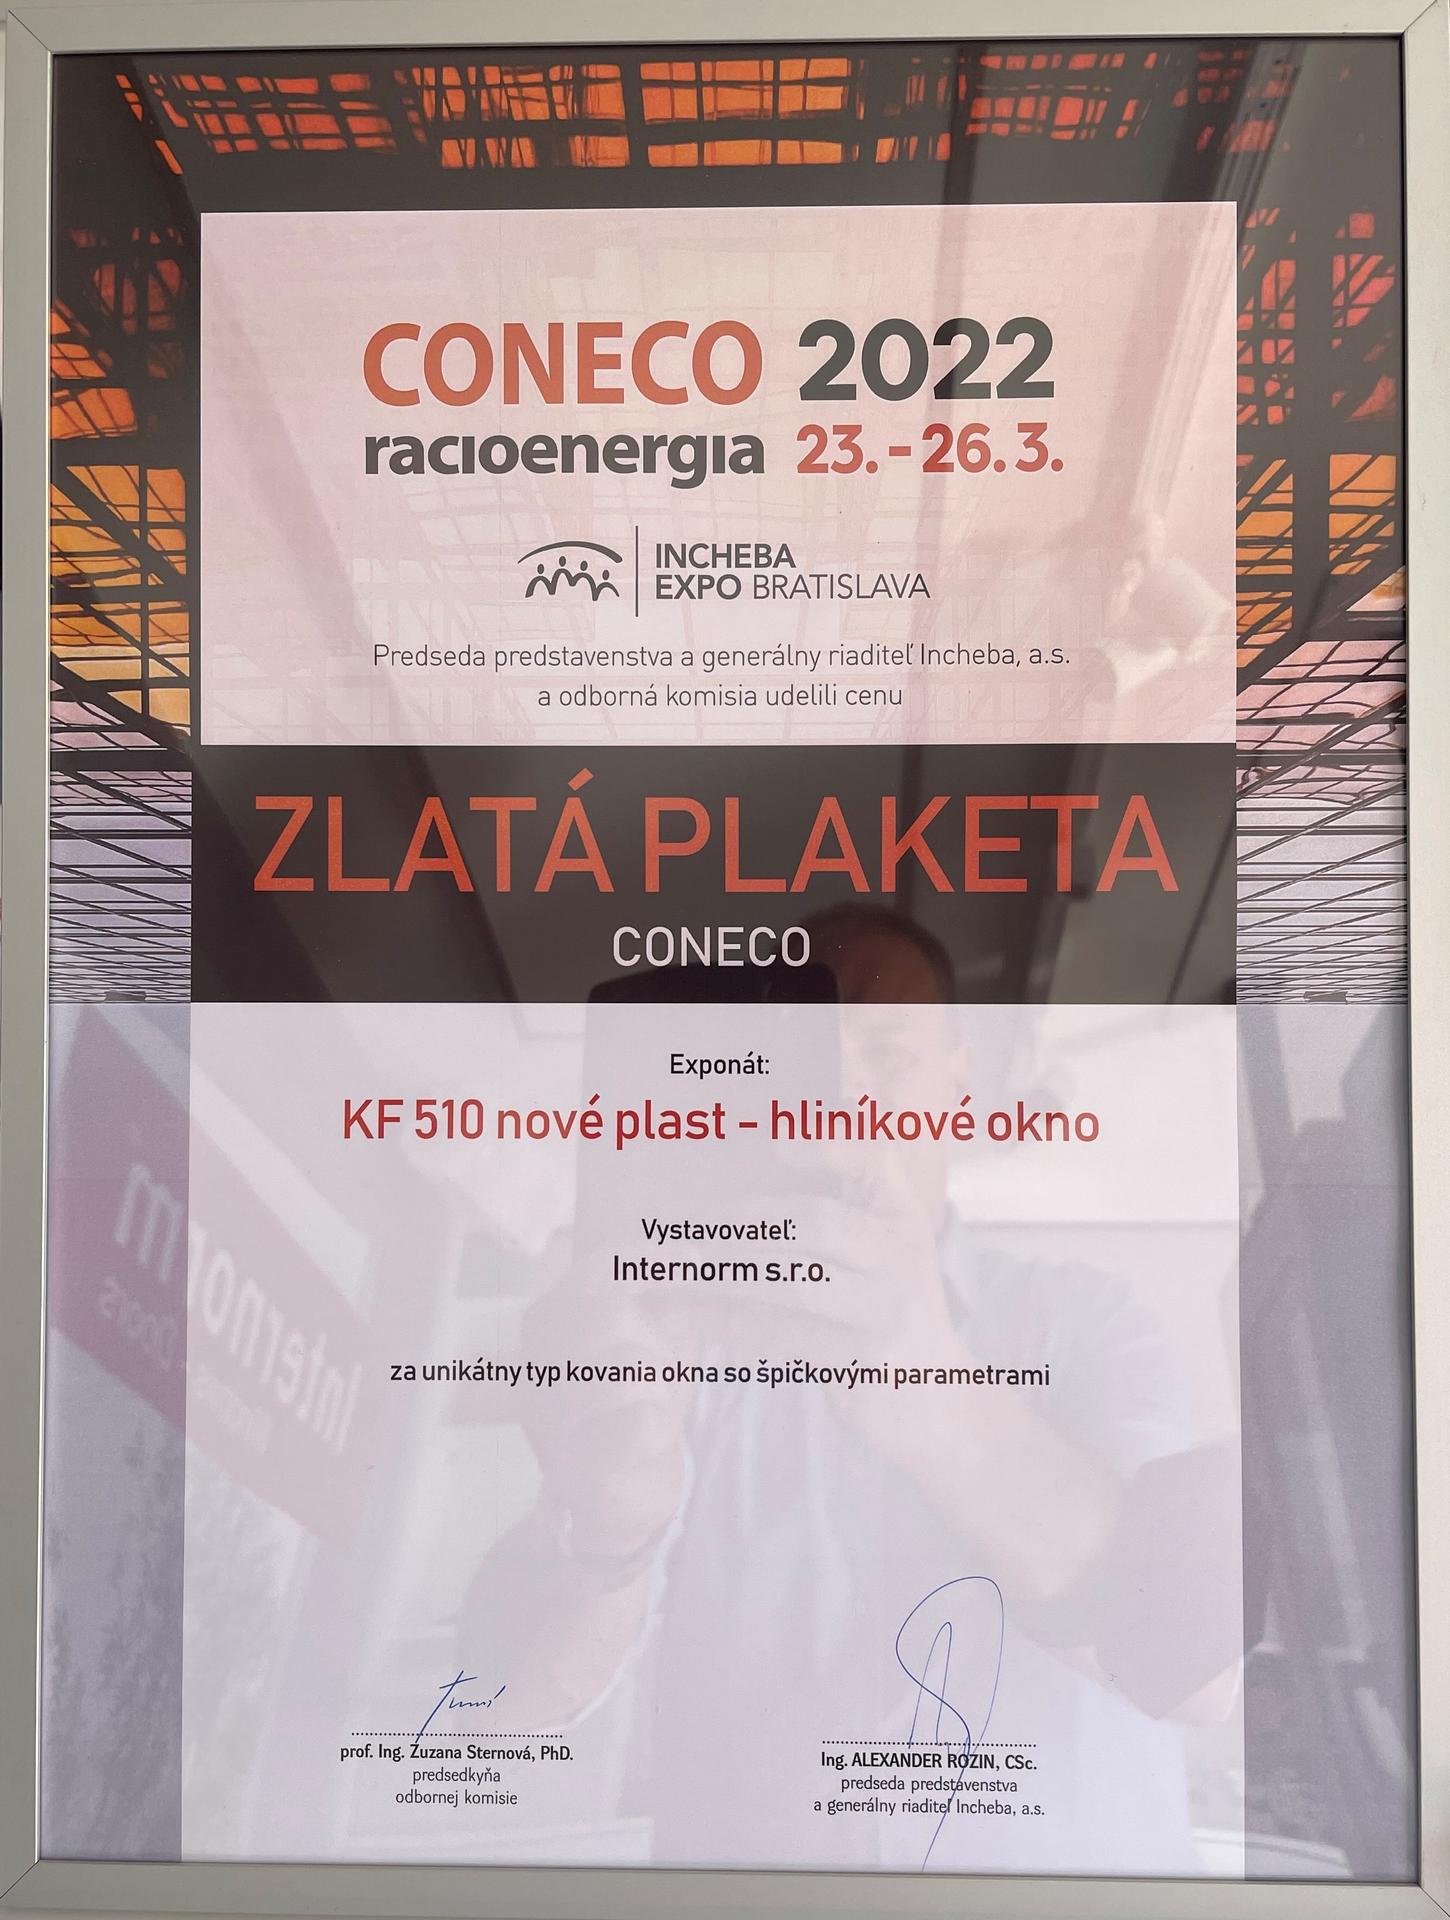 Tešíme sa, že Vám môžeme ponúknuť také výnimočné okno, ktoré bolo ocenené  ZLATOU PLAKETOU na výstave CONECO RACIOENERGIA 2022, ako je plast-hliníkové okno KF510  za unikátny typ kovania so špičkovými parametrami 😍 - Obrázok č. 1